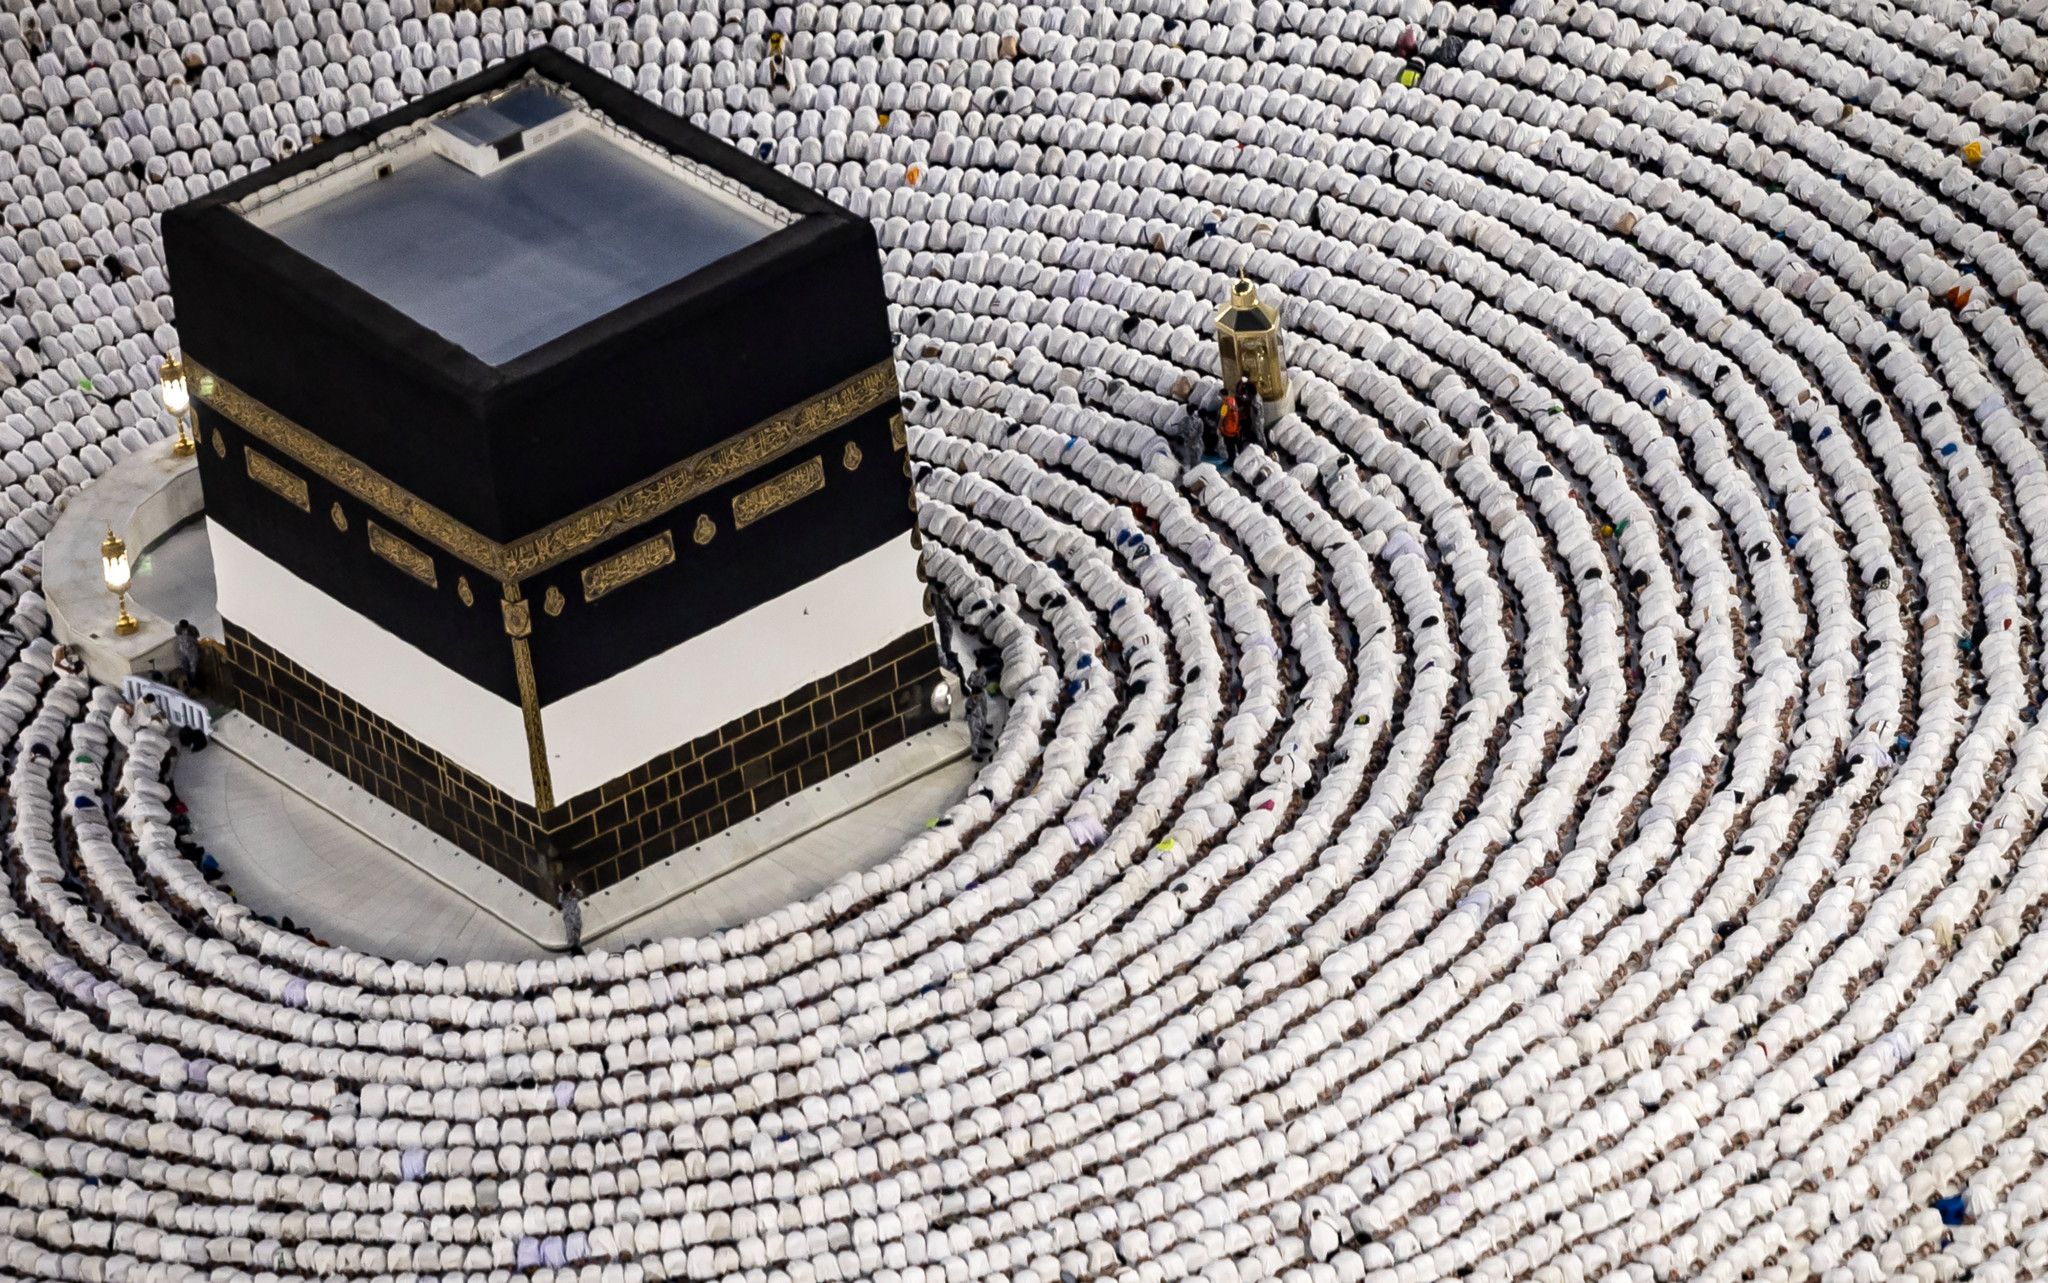 Les fidèles musulmans entament le grand pèlerinage à La Mecque